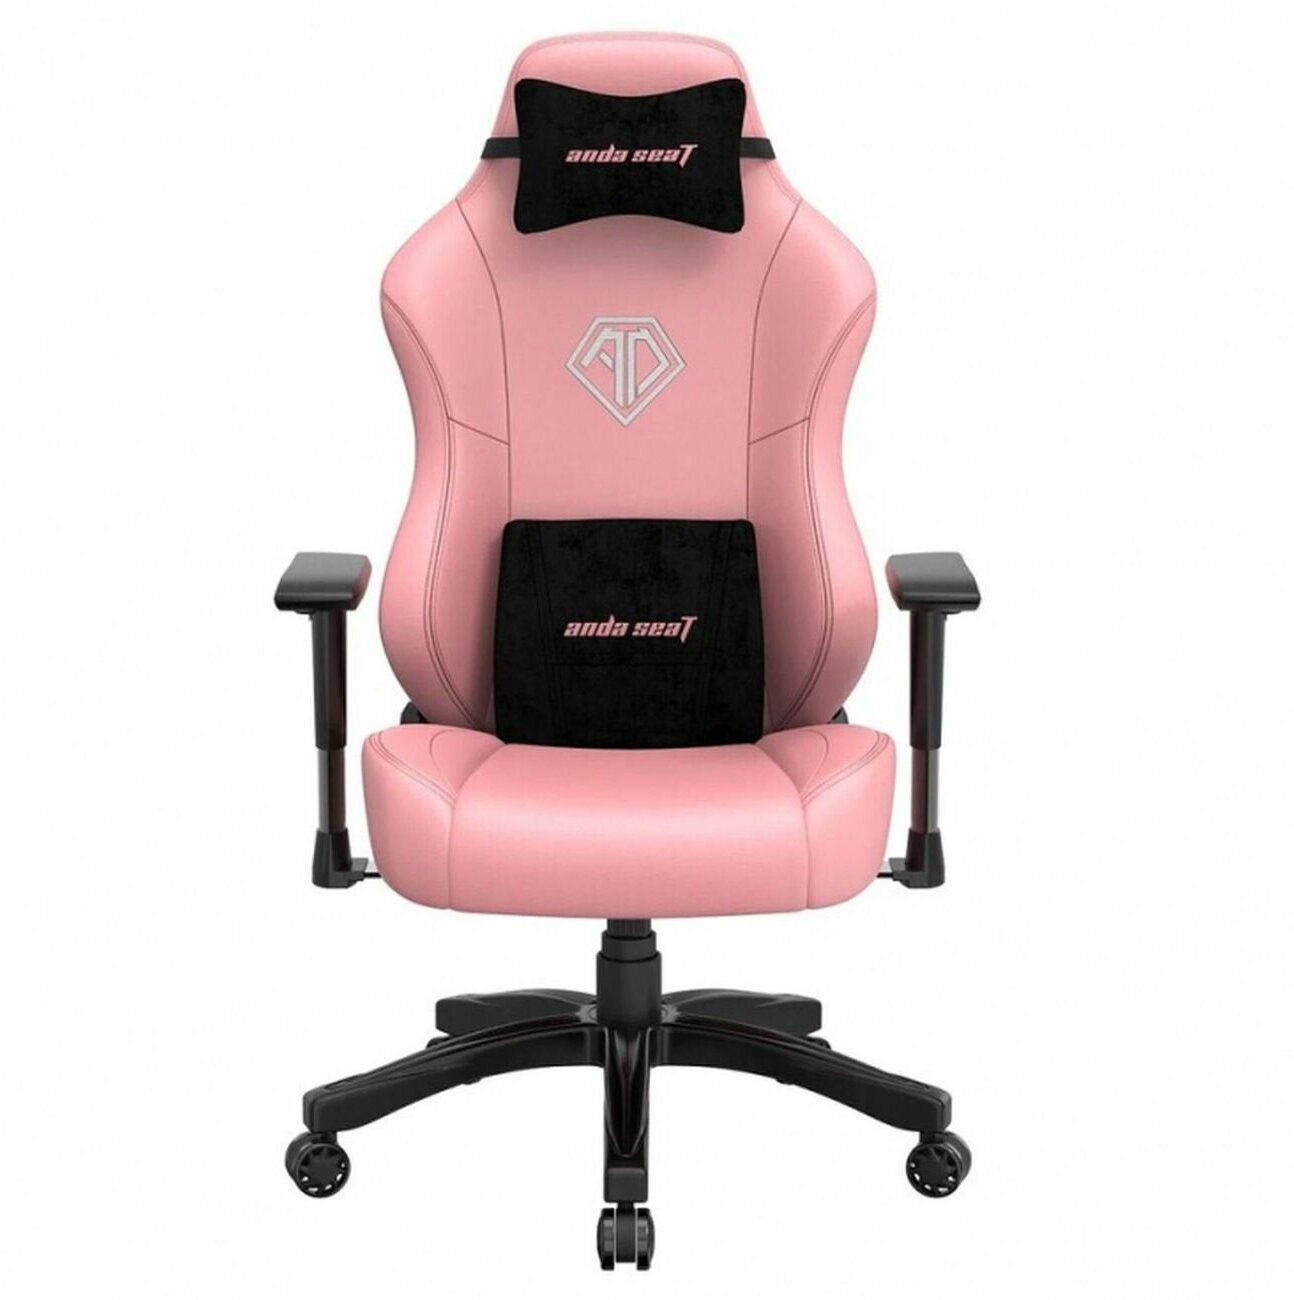 Компьютерное кресло Anda Seat Phantom 3 L игровое, обивка: искусственная кожа, цвет: Creamy pink - фотография № 5